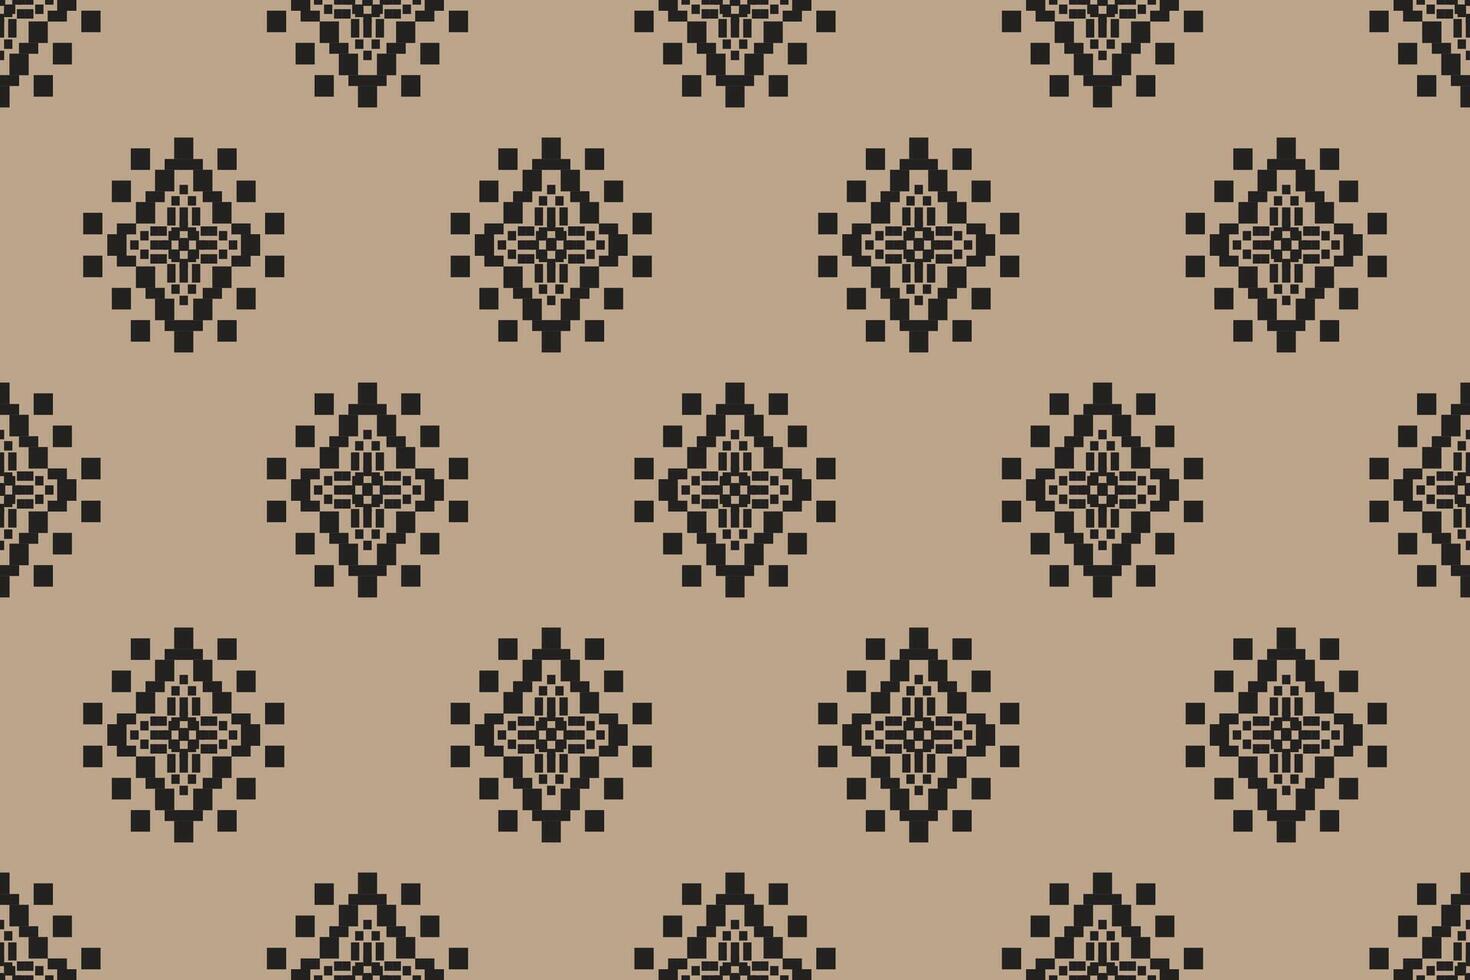 Navajo tribal naadloos patroon. inheems Amerikaans ornament. etnisch zuiden western decor stijl. boho meetkundig ornament. pixel naadloos patroon. Mexicaans deken, tapijt. geweven tapijt illustratie. vector